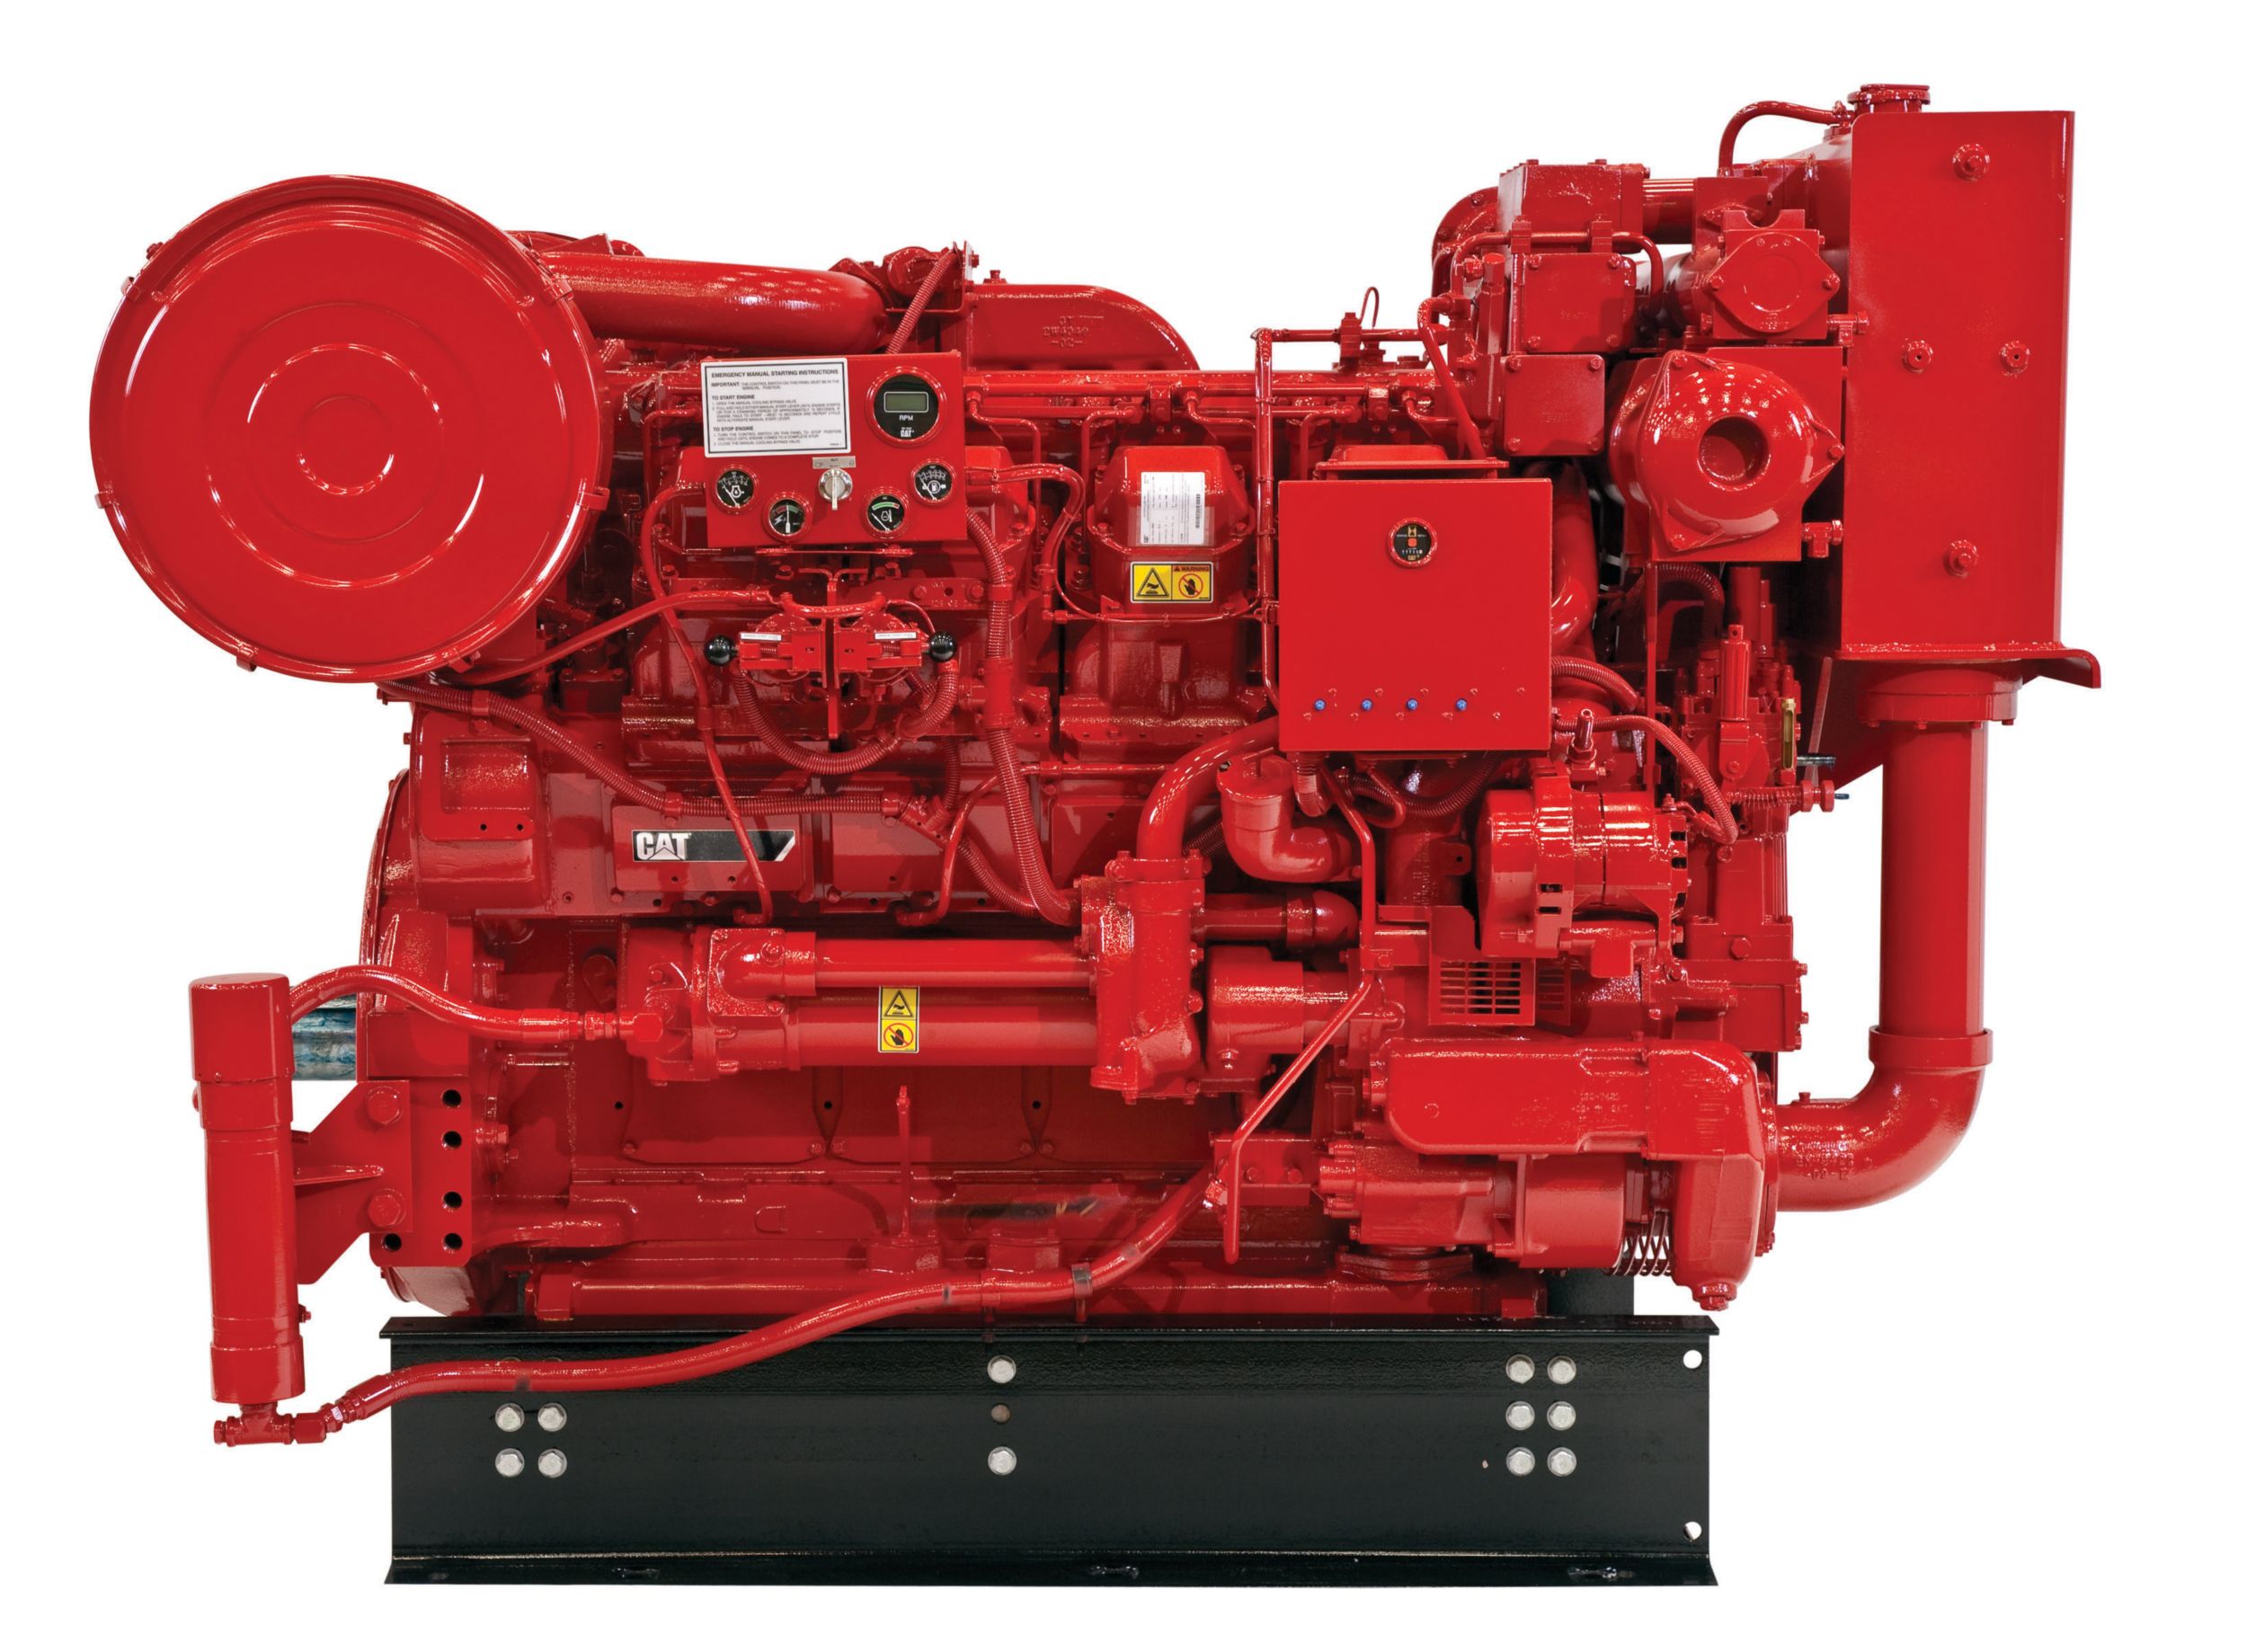 Дизельные двигатели 3512 для пожарных насосов / дизельных пожарных насосов — для регионов как с высокими, так и с более низкими экологическими требованиями